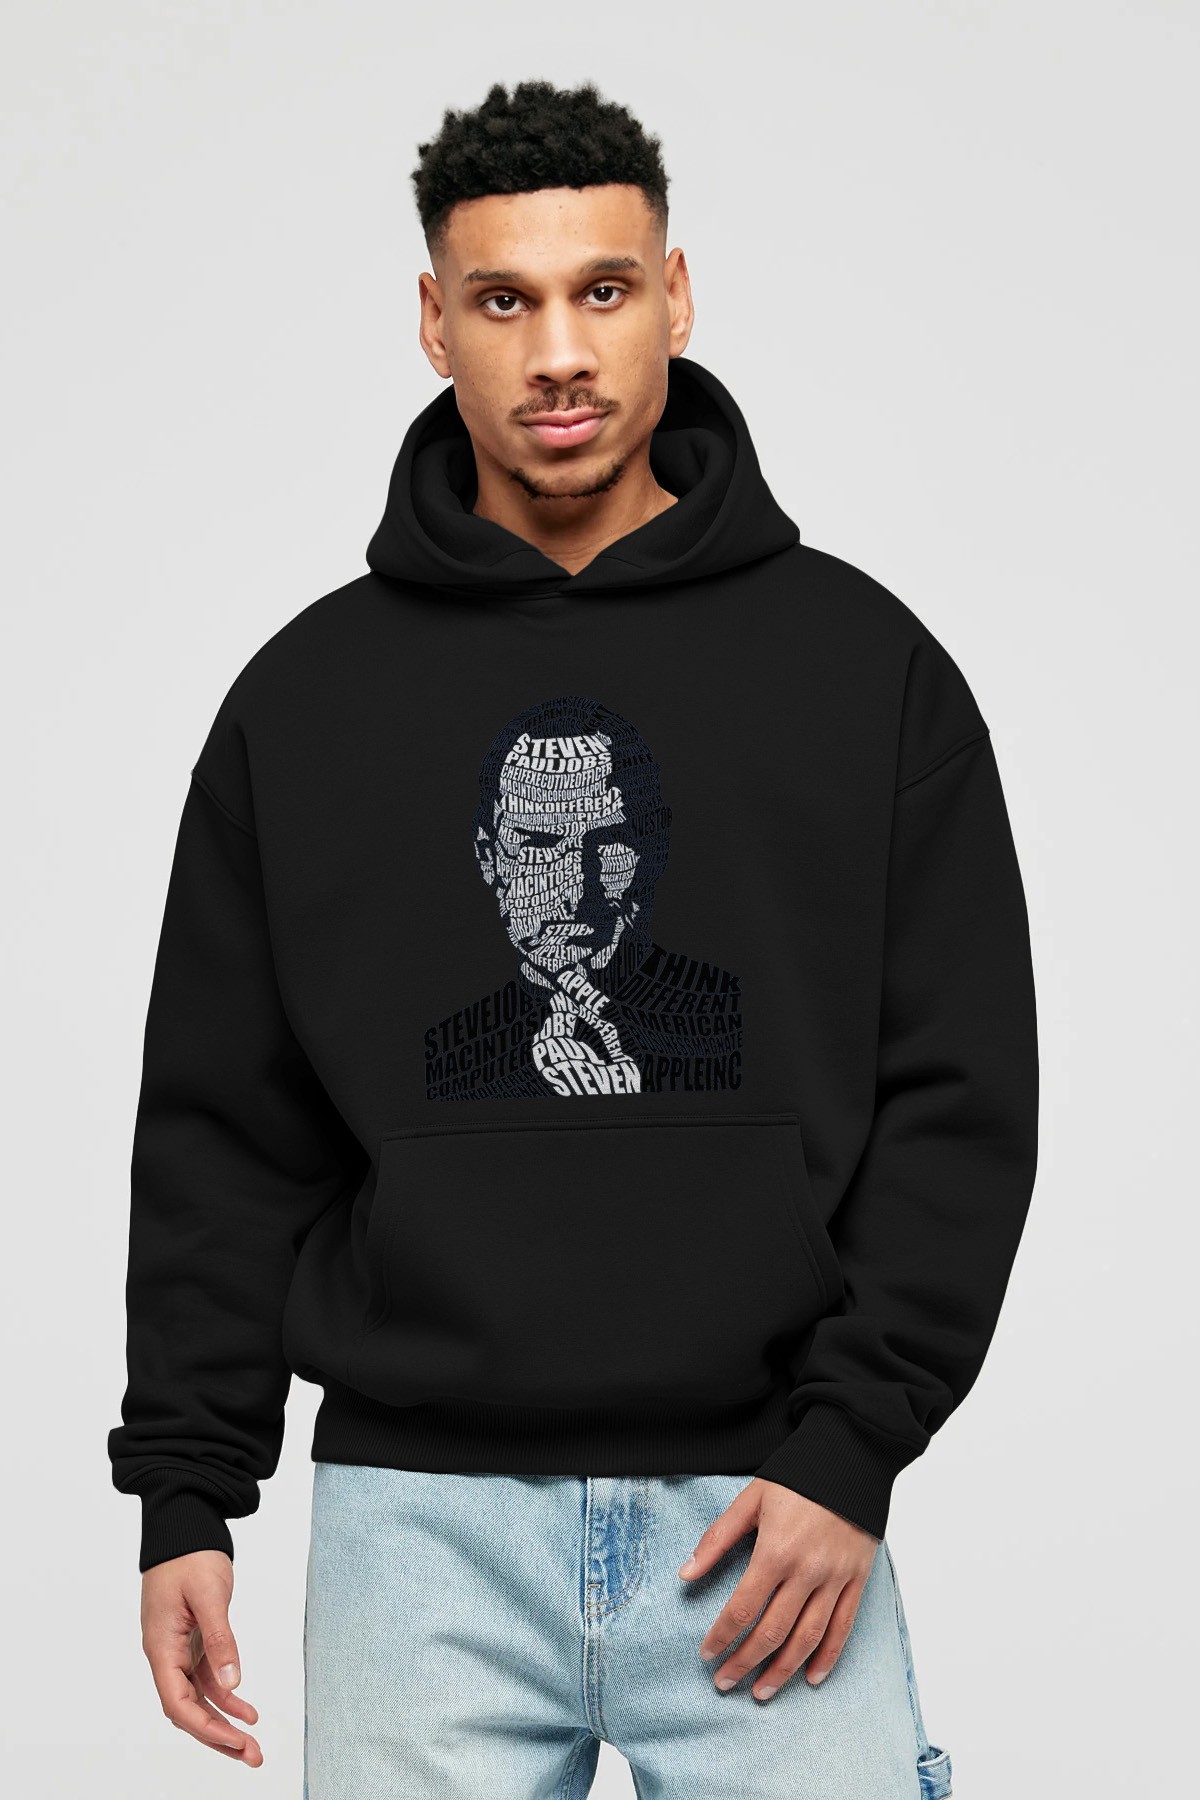 Steve Jobs Calligram Ön Baskılı Hoodie Oversize Kapüşonlu Sweatshirt Erkek Kadın Unisex